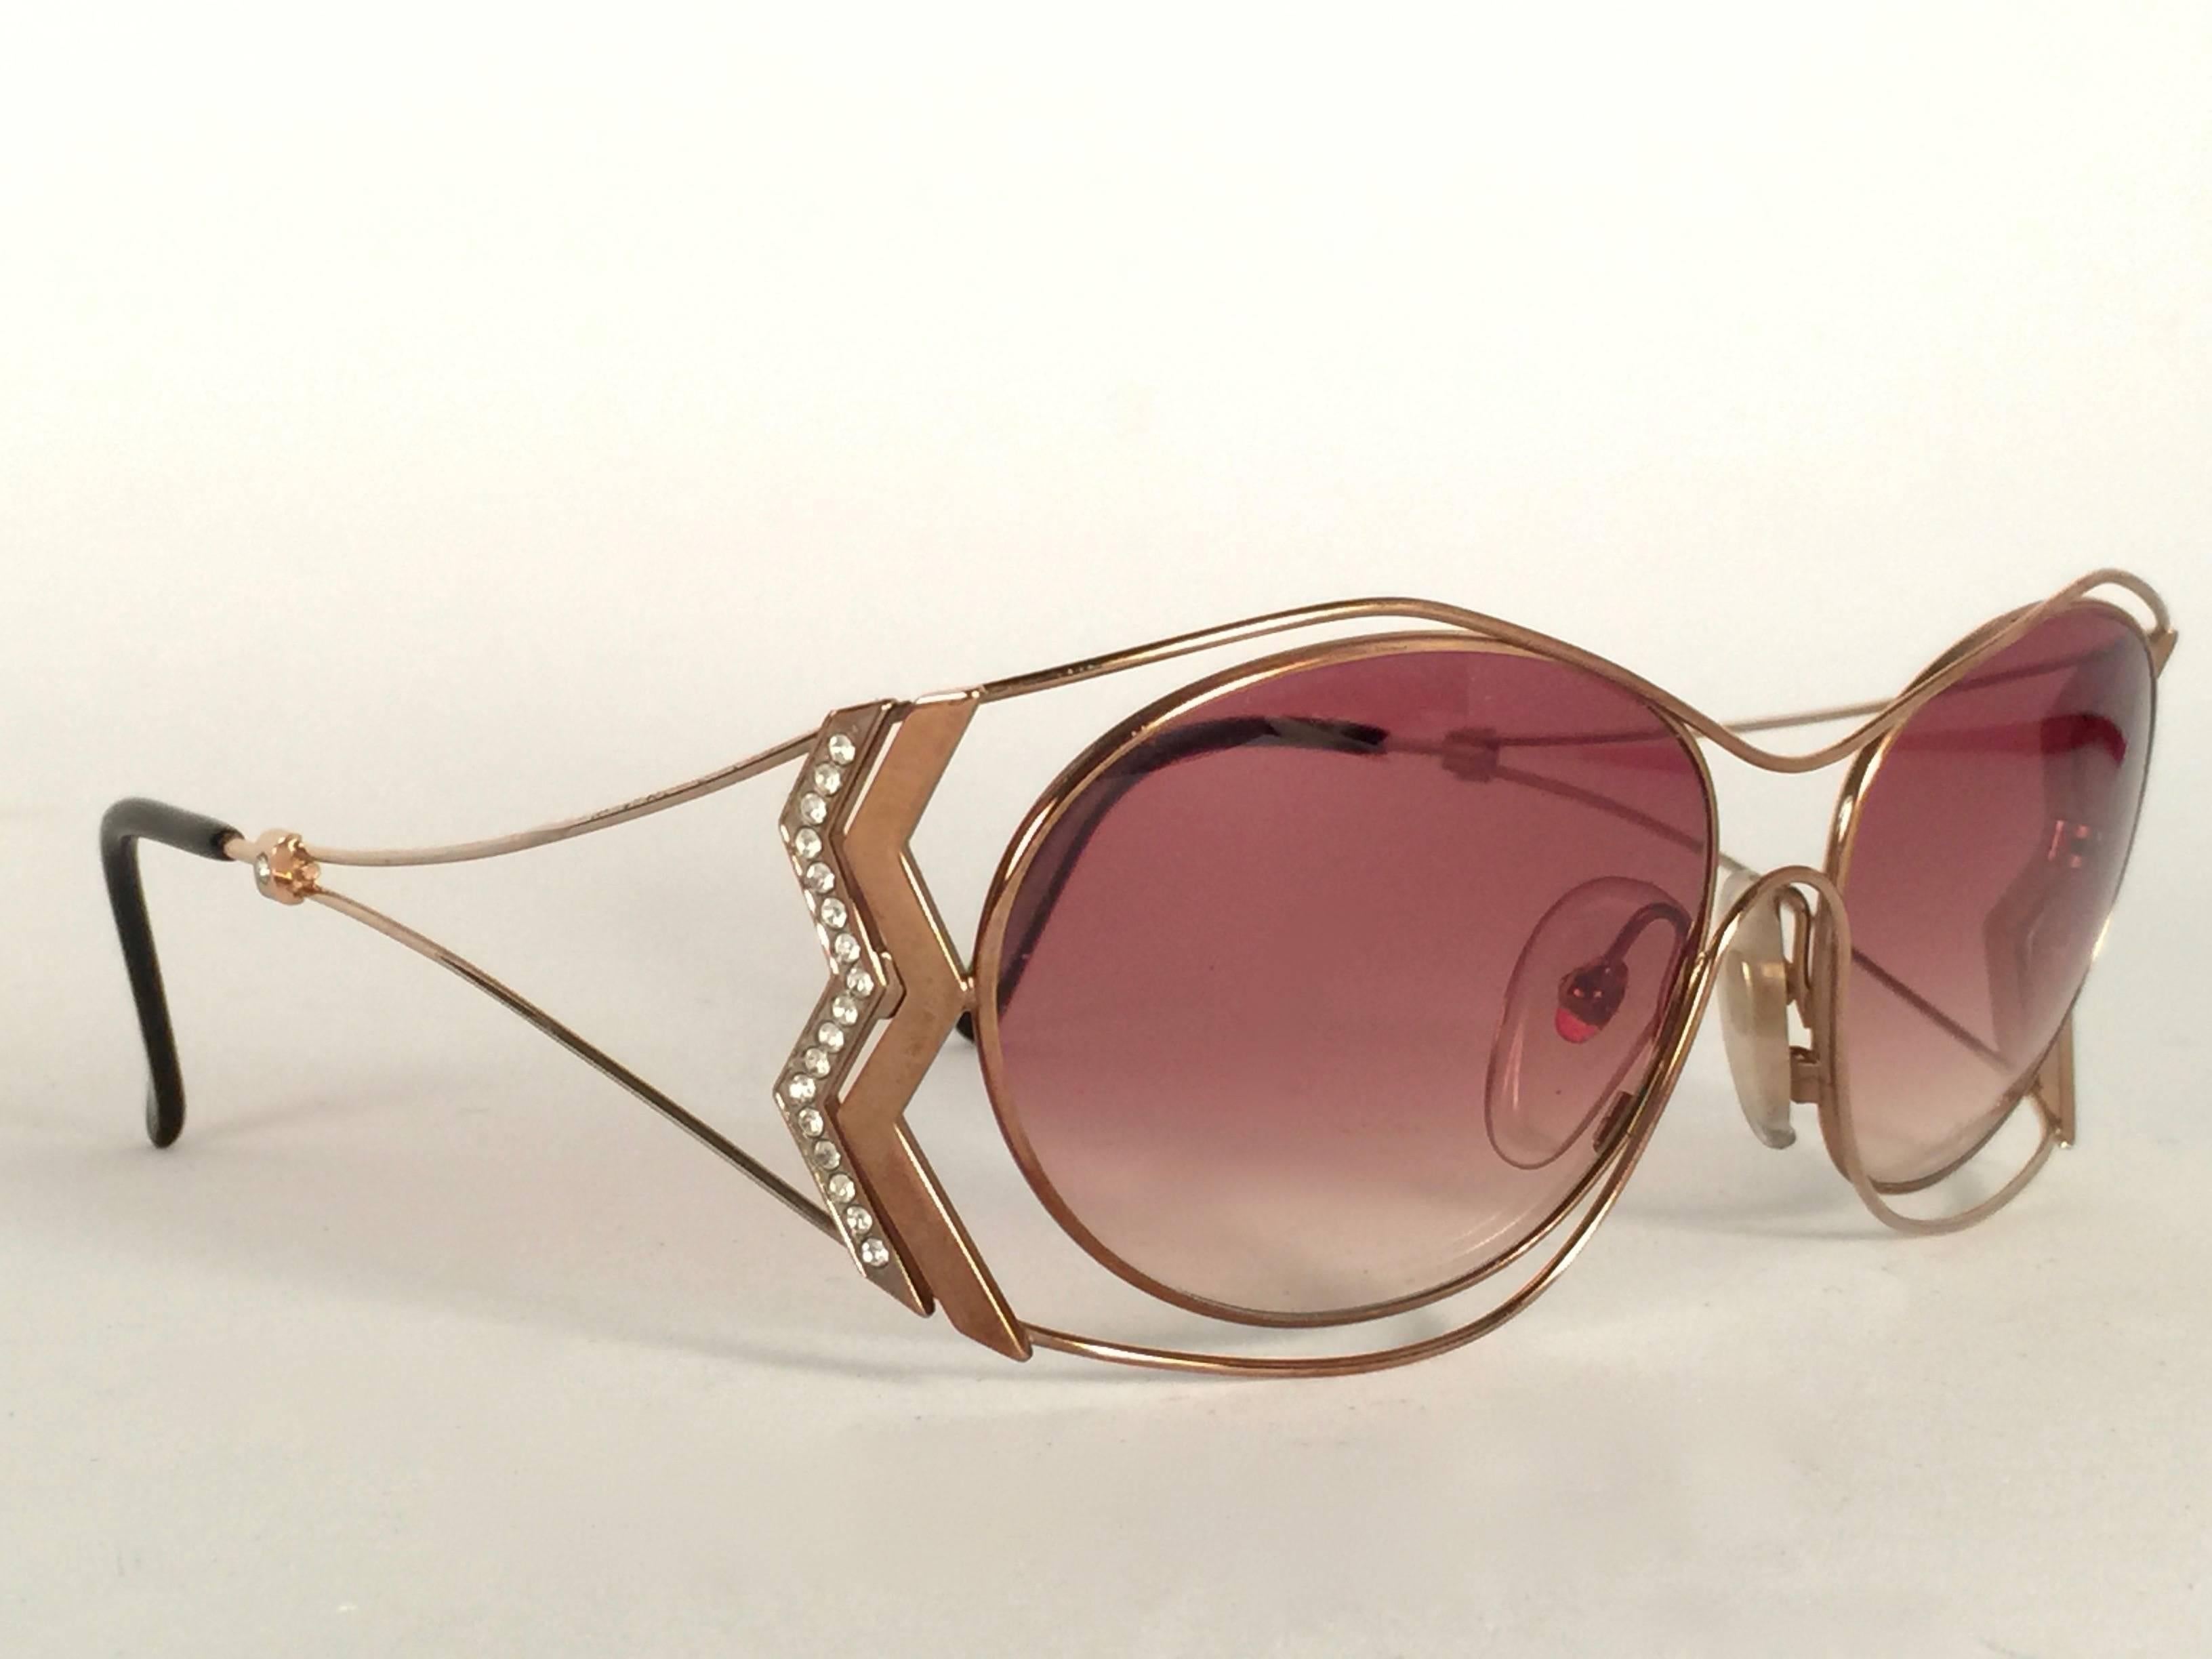 Mint Vintage Paloma Picasso Gold Sunglasses By Viennaline Made in Germany 1980's. 

Le cadre présente une légère usure et un ternissement dus au stockage. 

Fabriqué en Allemagne.

